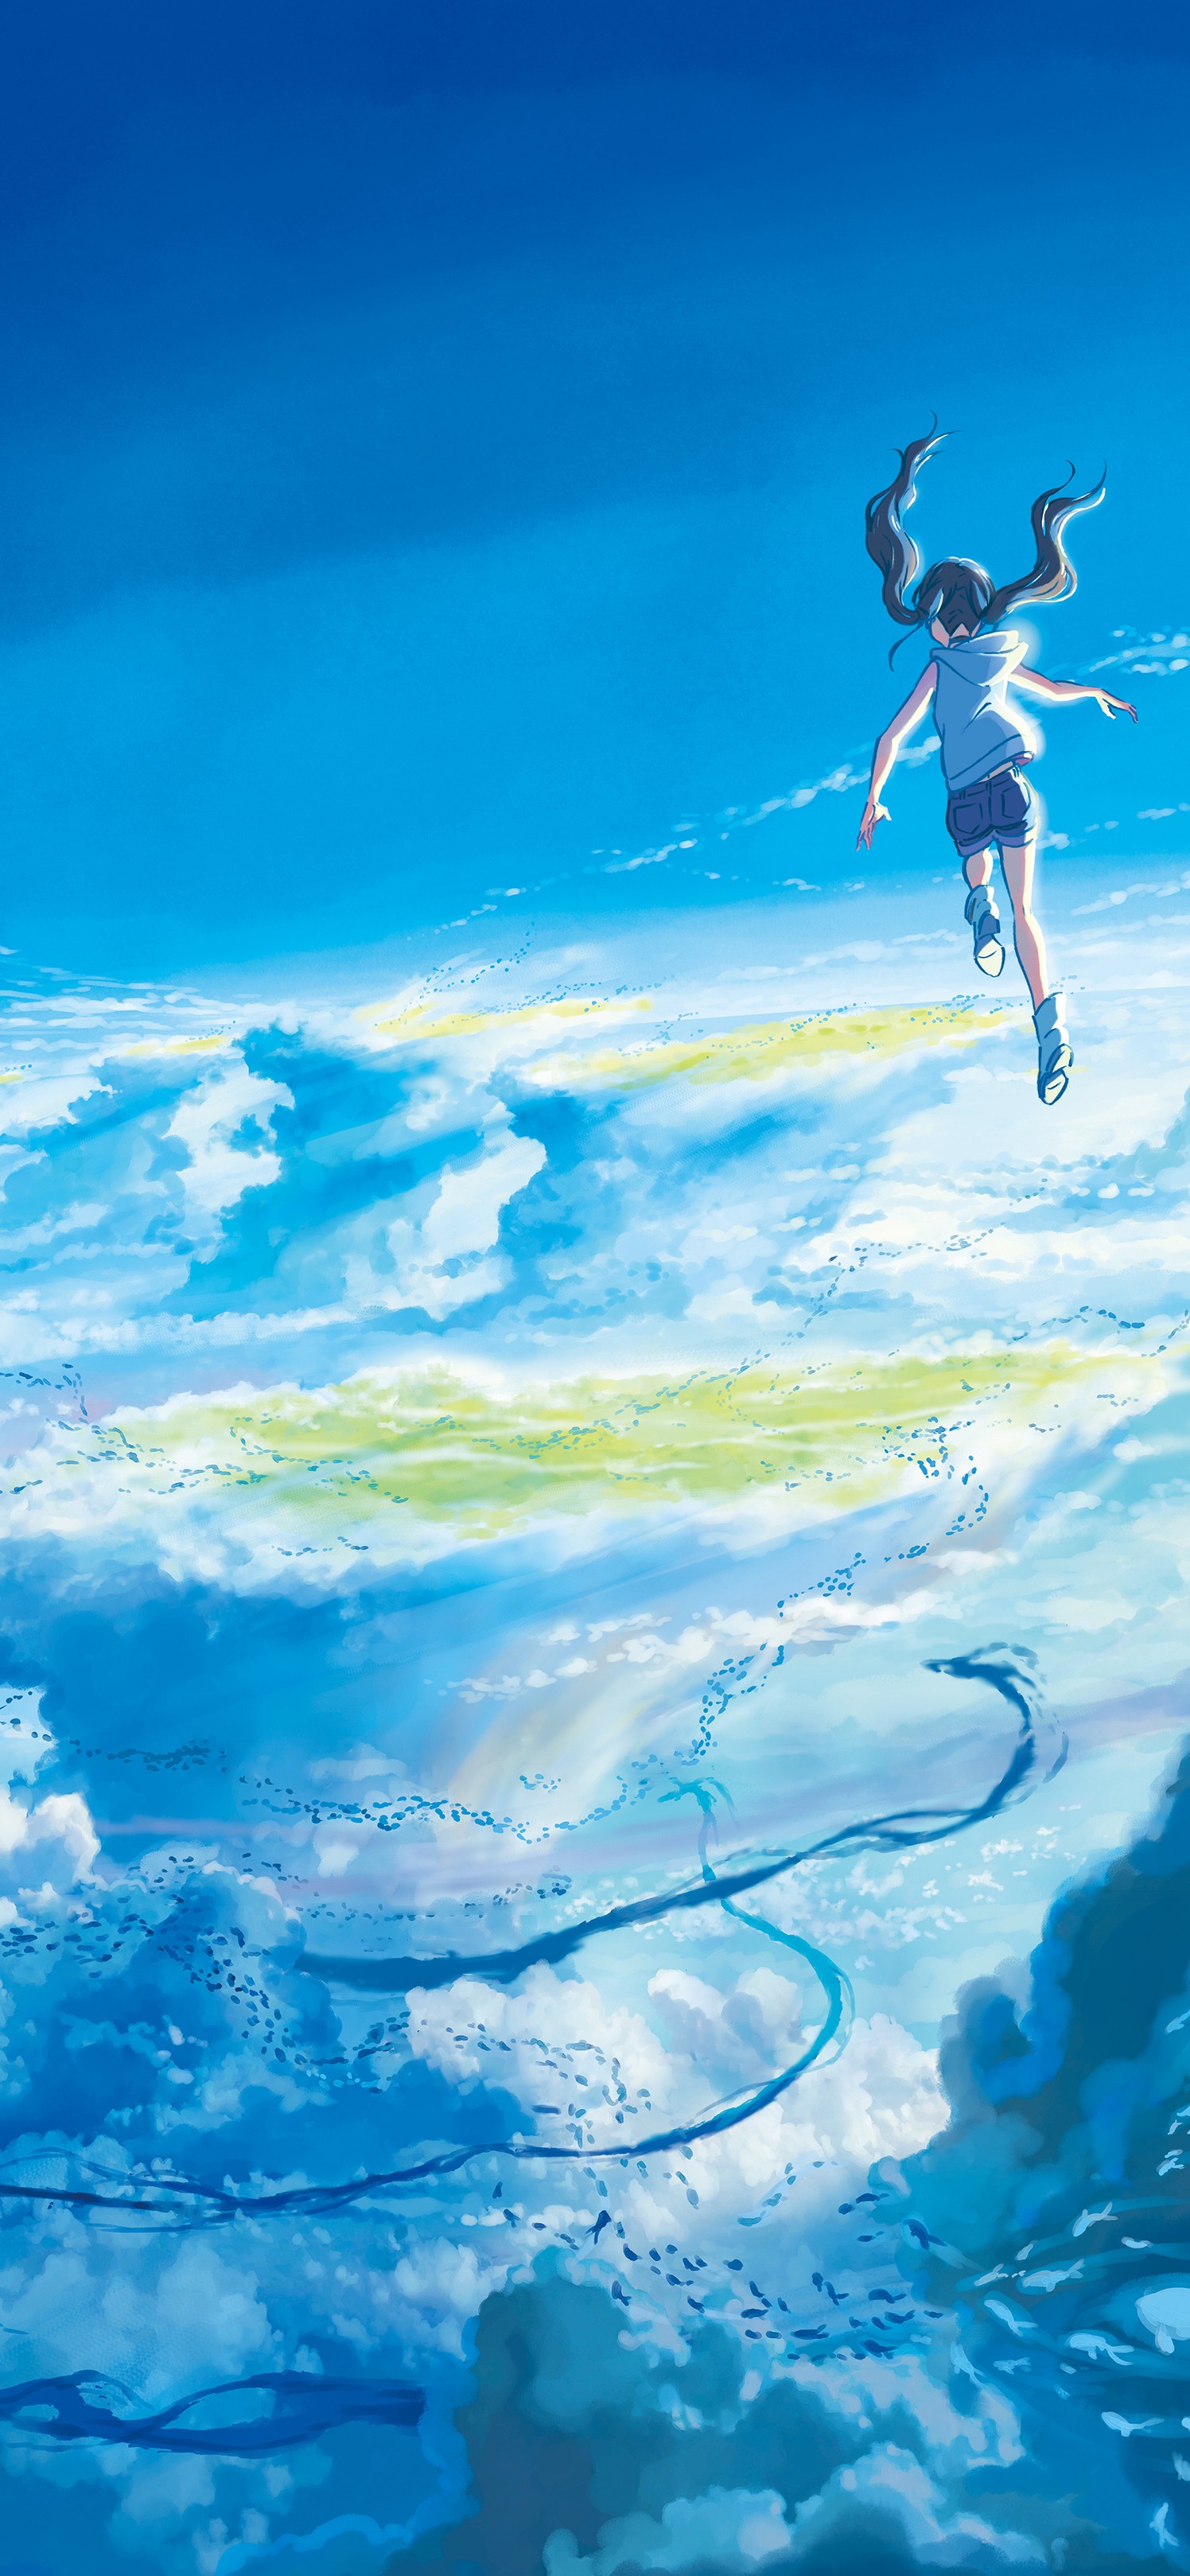 飞翔于云上的长发动漫美少女的唯美场景手机壁纸